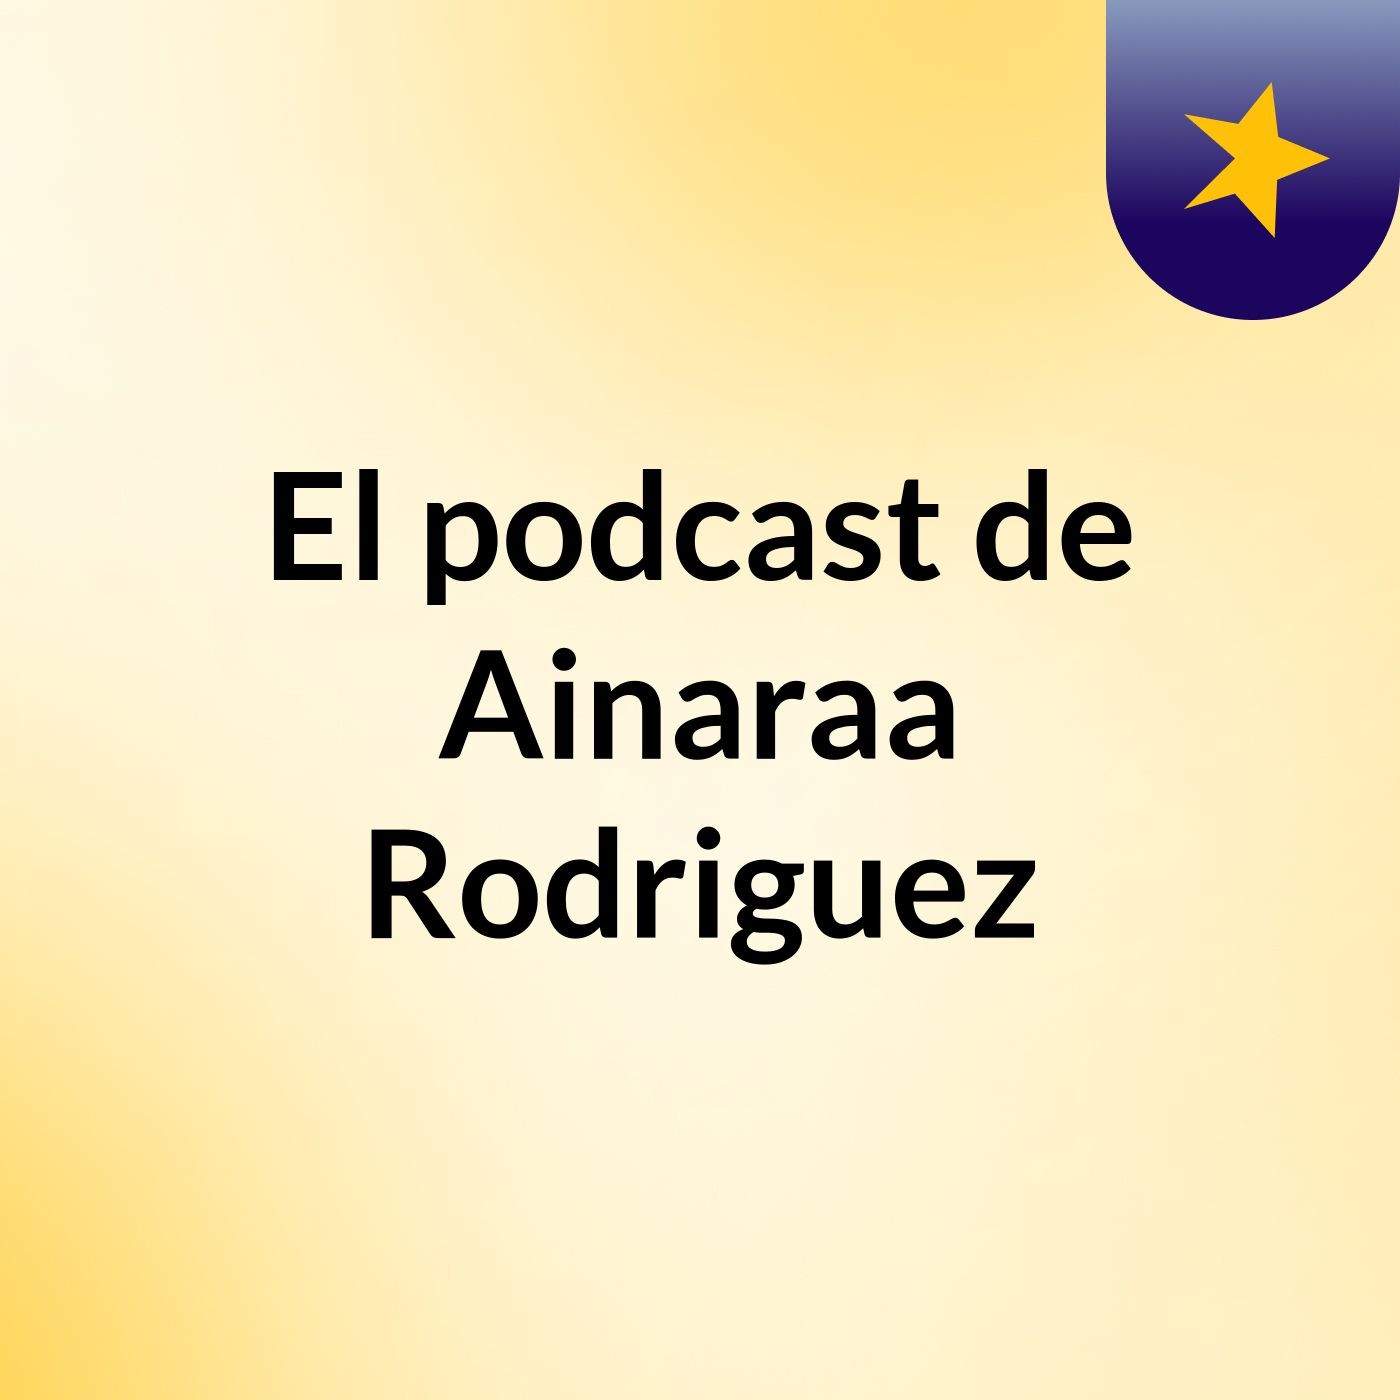 El podcast de Ainaraa Rodriguez